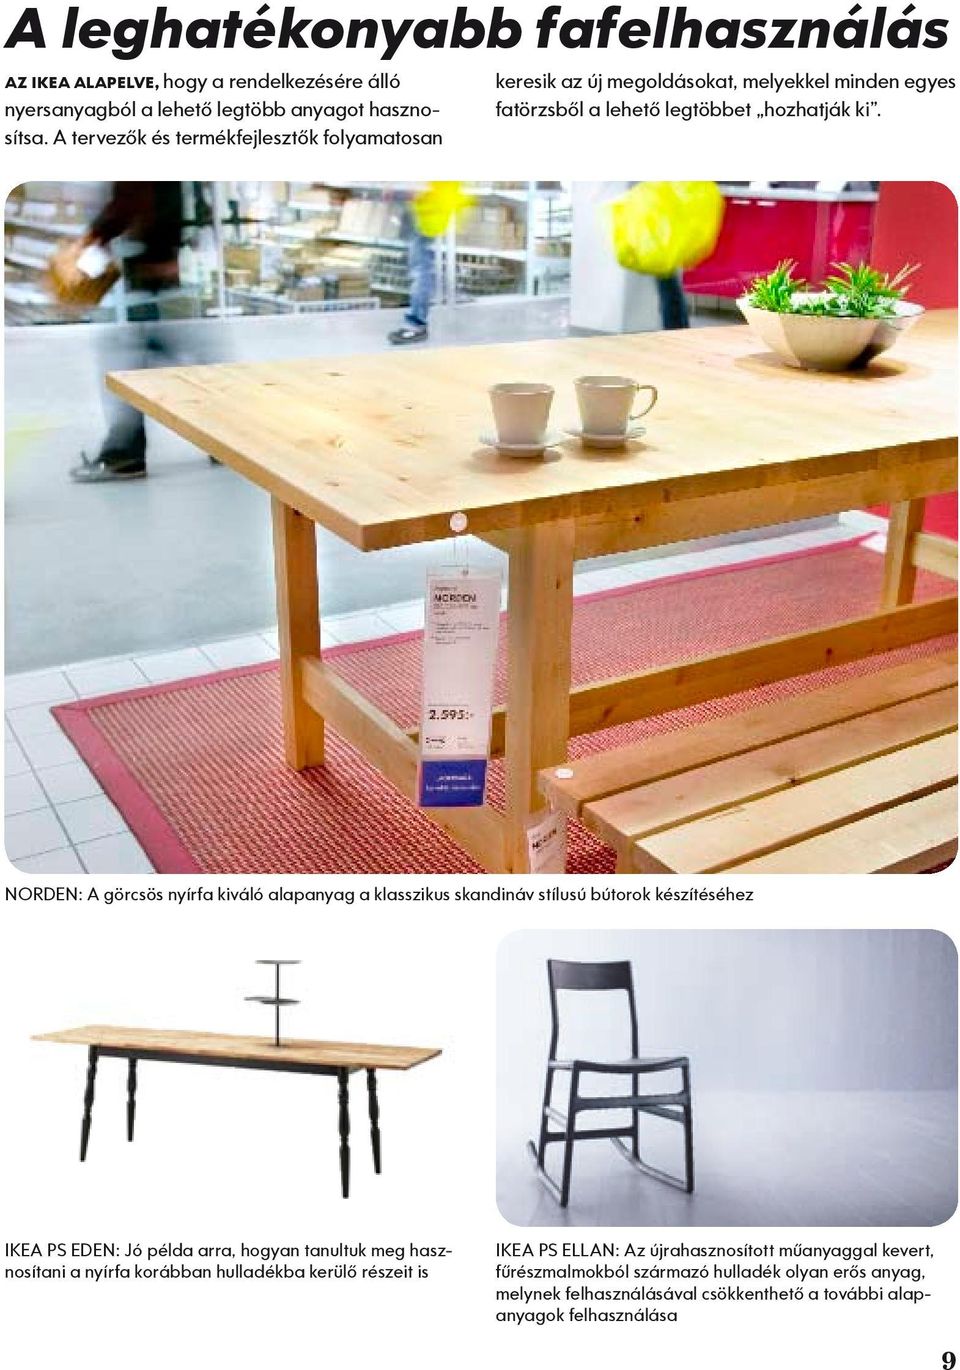 NORDEN: A görcsös nyírfa kiváló alapanyag a klasszikus skandináv stílusú bútorok készítéséhez IKEA PS EDEN: Jó példa arra, hogyan tanultuk meg hasznosítani a